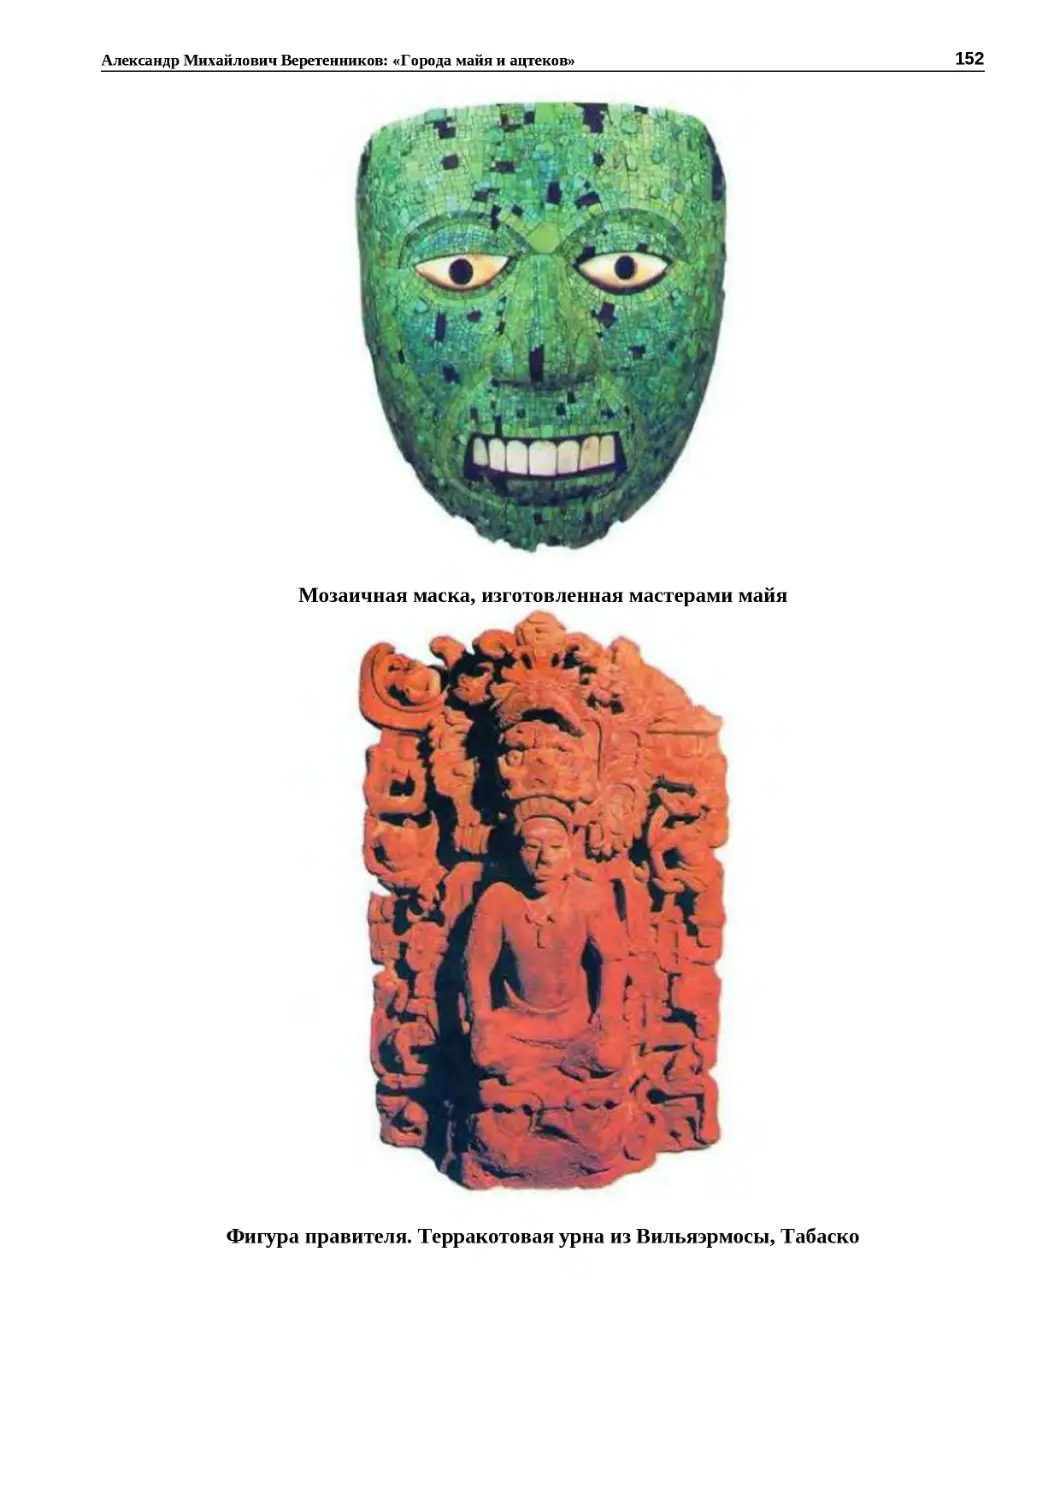 "
﻿Мозаичная маска, изготовленная мастерами май
"
﻿Фигура правителя. Терракотовая урна из Вильяэрмосы, Табаск